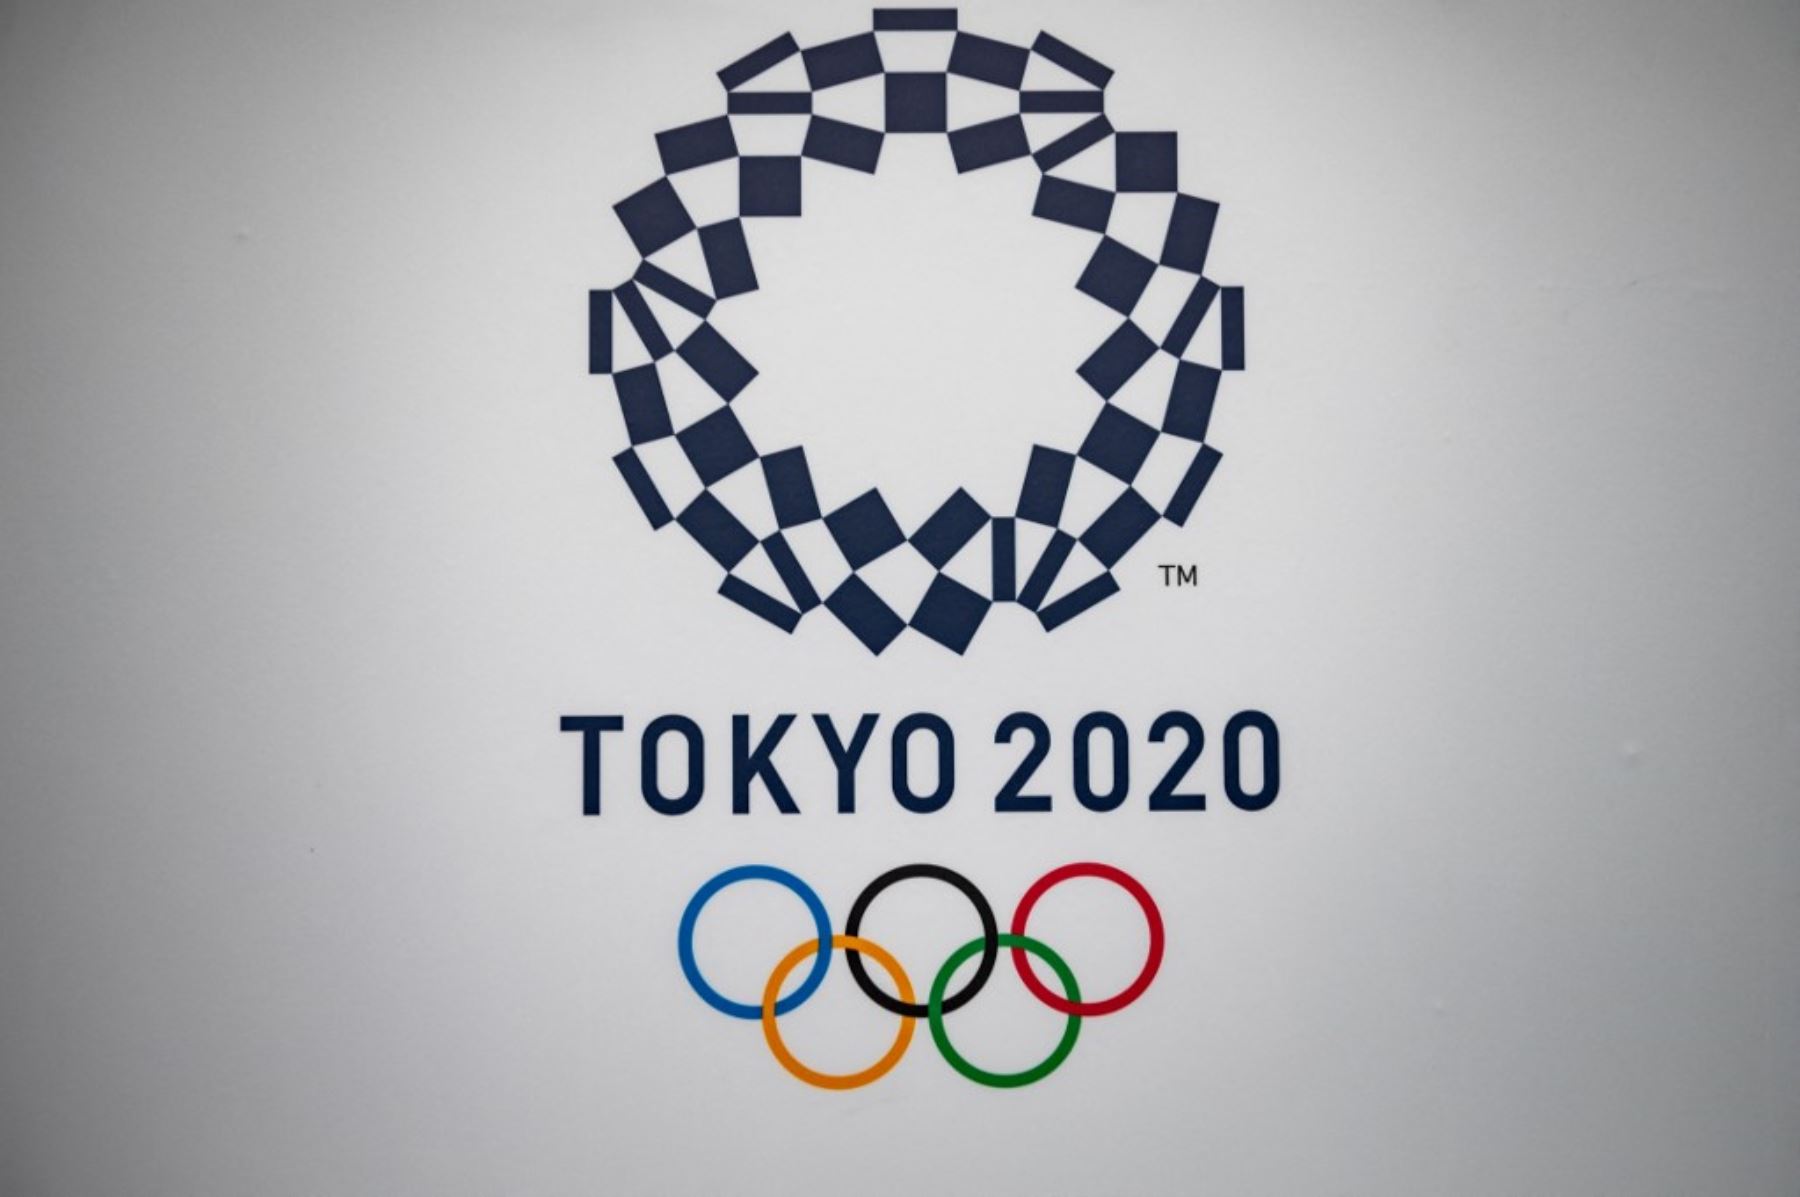 Los Juegos Olímpicos Tokio 2020 usará la realidad aumentada